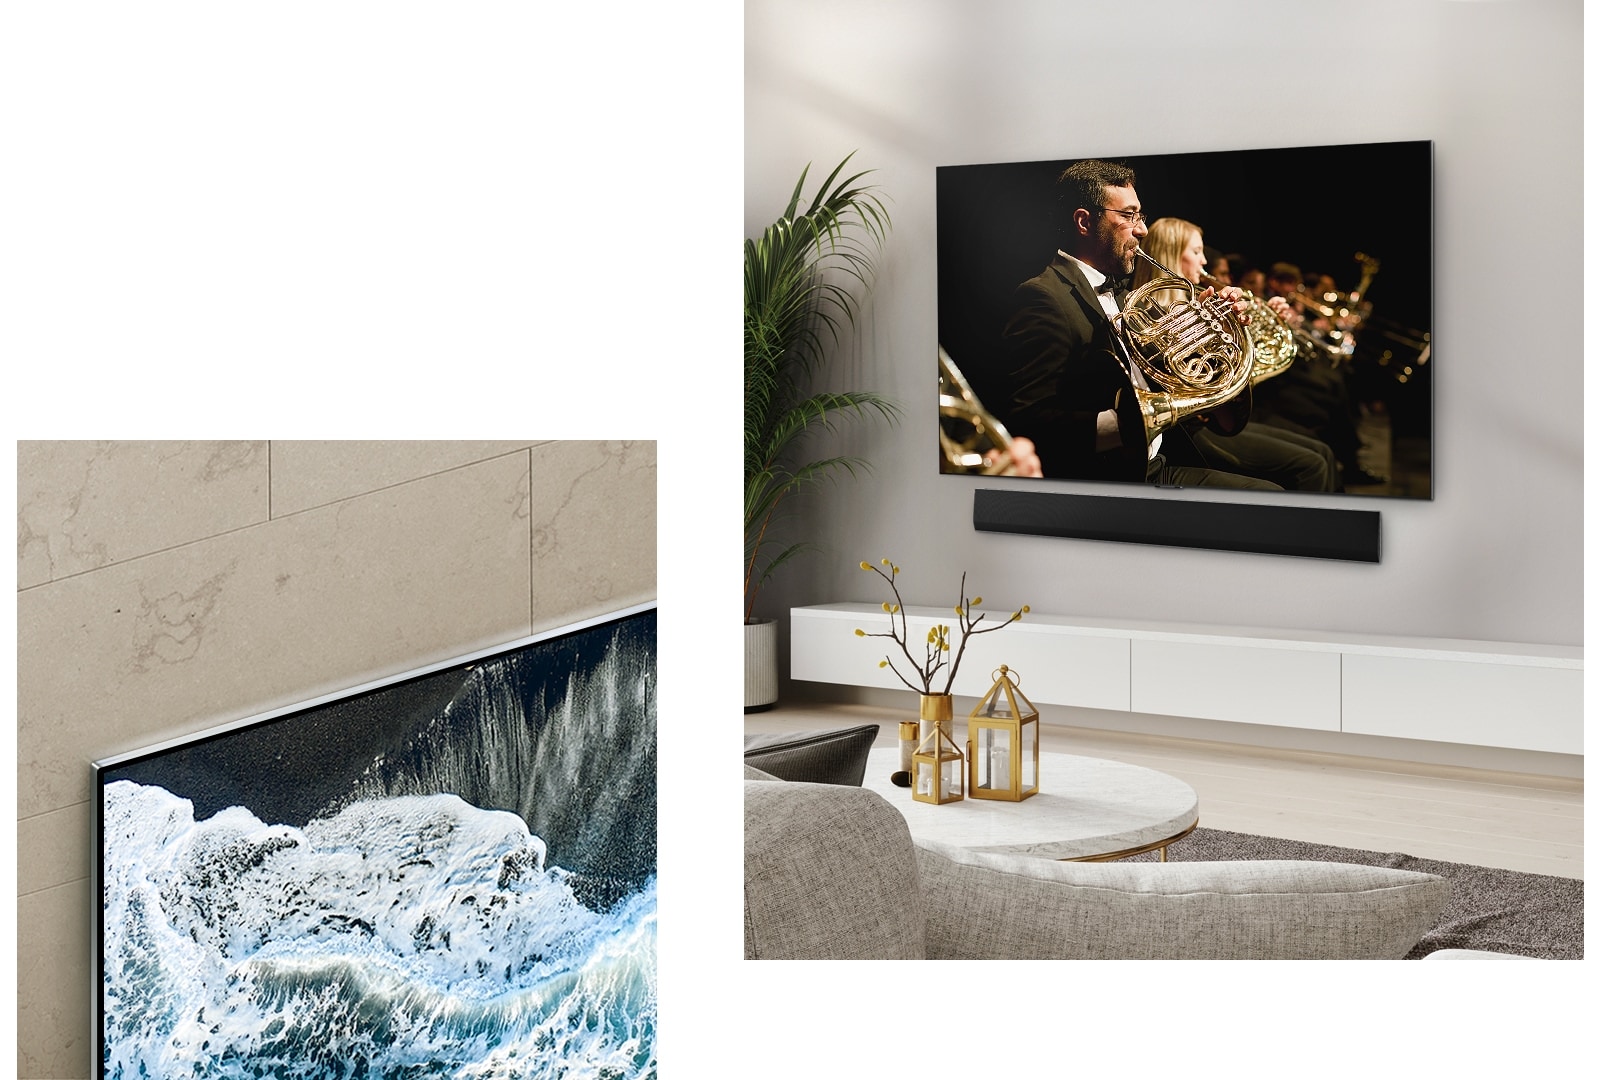 斜視圖的 LG OLED TV，OLED G4 壁掛於大理石牆，展示其完美融入牆面。  LG OLED TV，OLED G4 和 LG Soundbar 壁掛於乾淨的客廳空間內，螢幕播放管弦樂演奏。